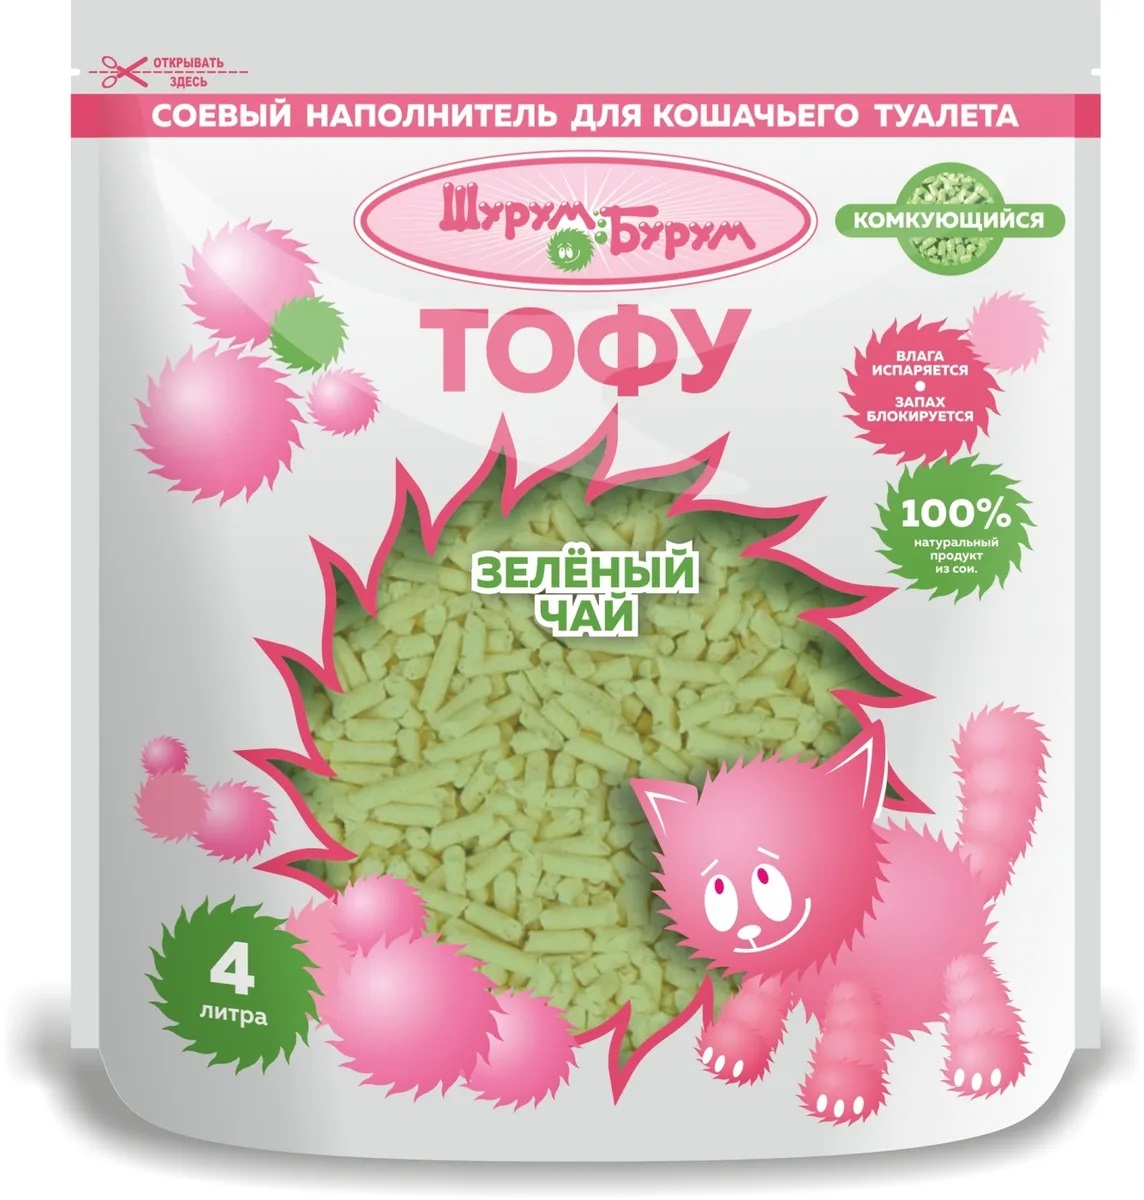 Наполнитель комкующийся растительный для кошачьего туалета Шурум-бурум тофу 4 л зеленый чай